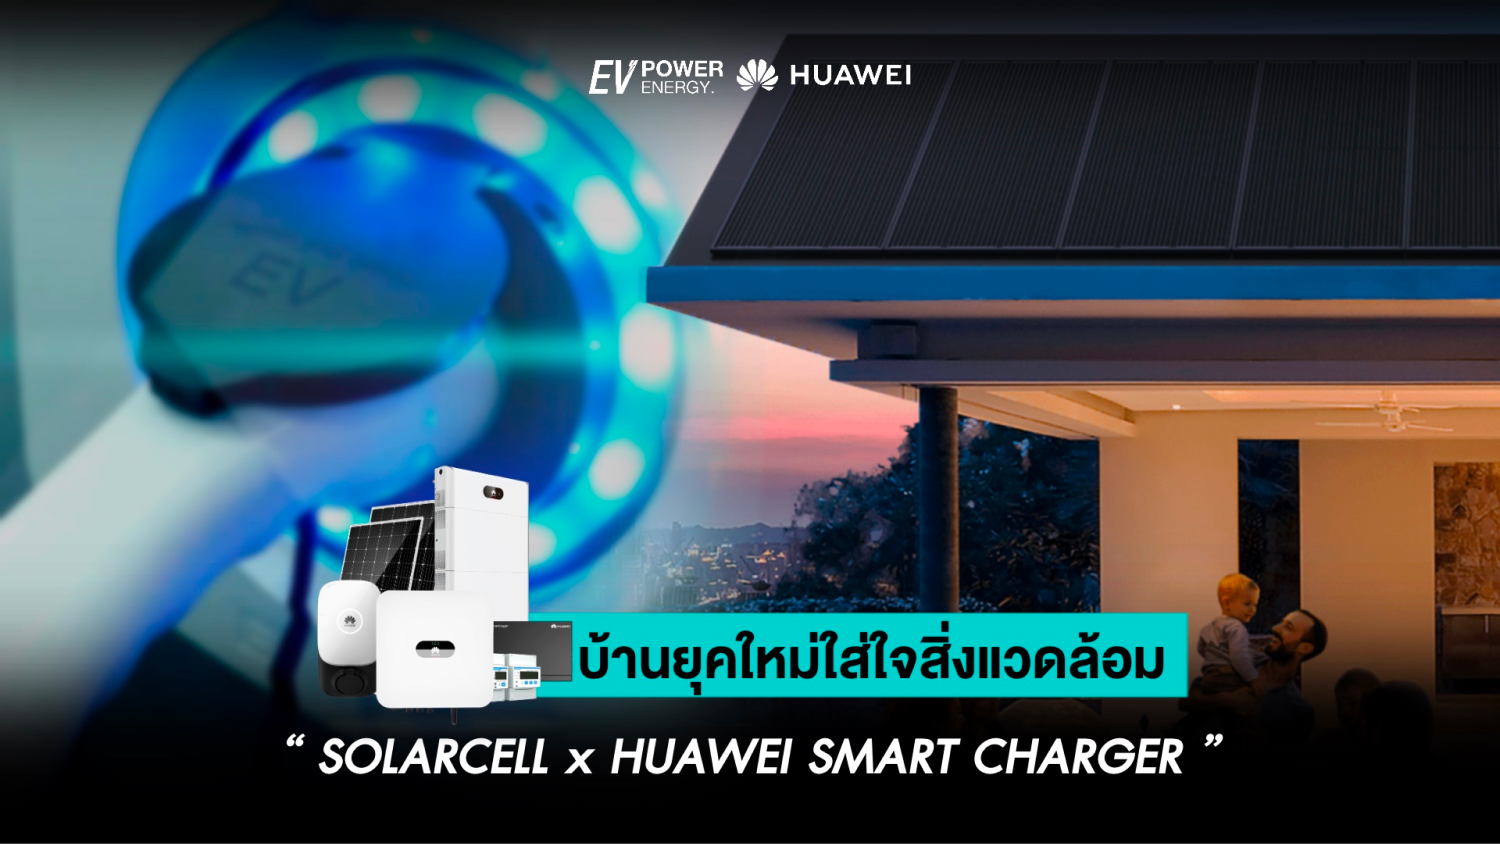 บ้านยุคใหม่ใส่ใจสิ่งแวดล้อม Solar cell x Huawei Smart Charger